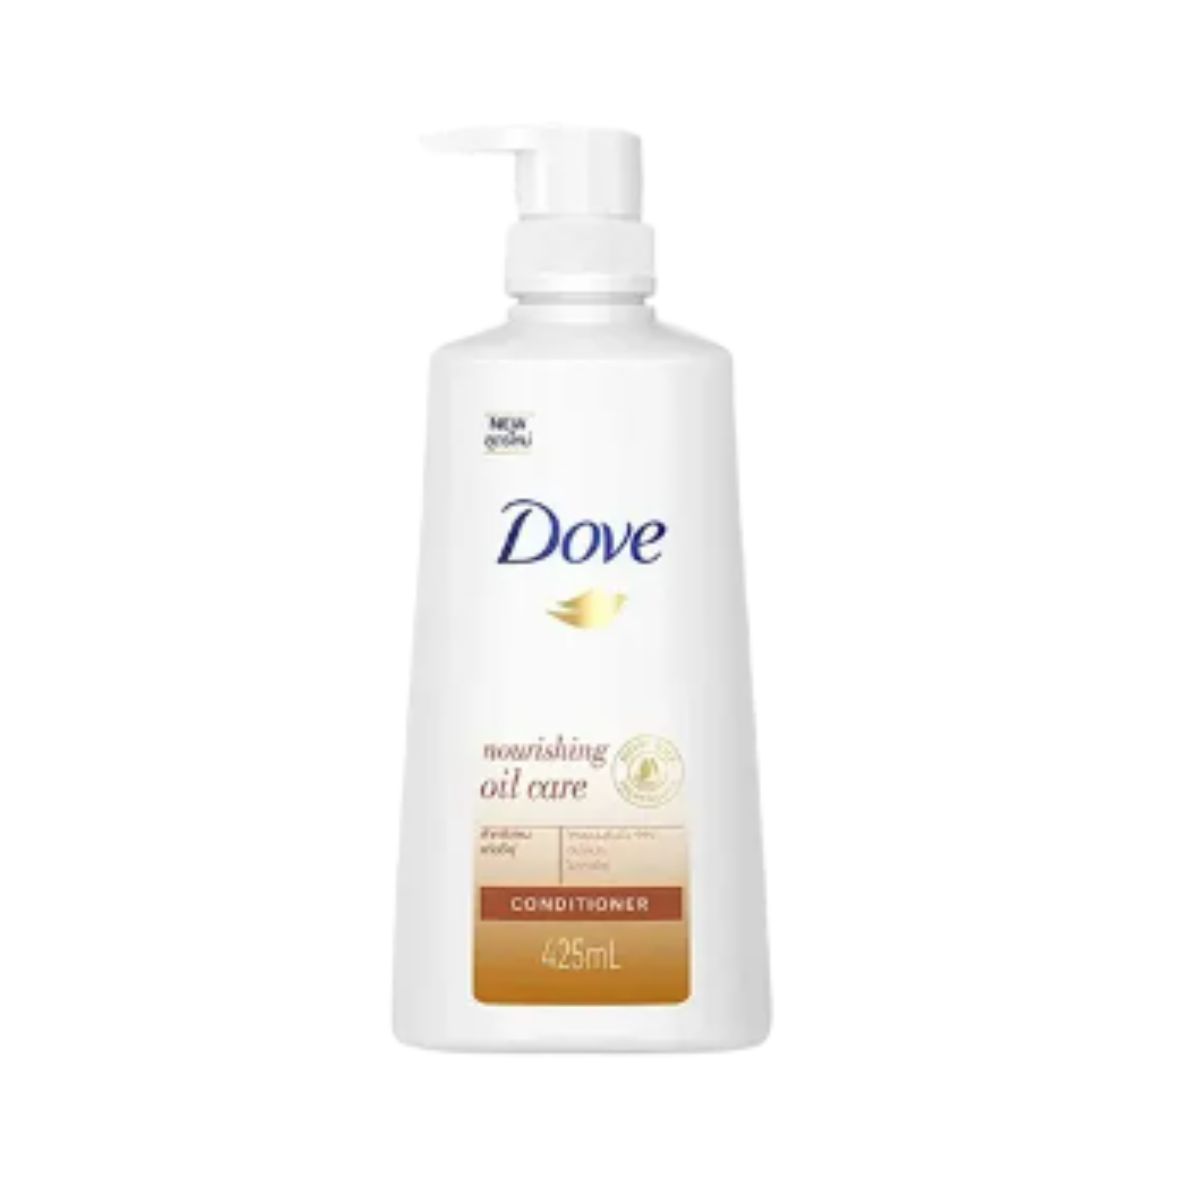 Dove Nourishing Oil Care Conditioner - 425ml